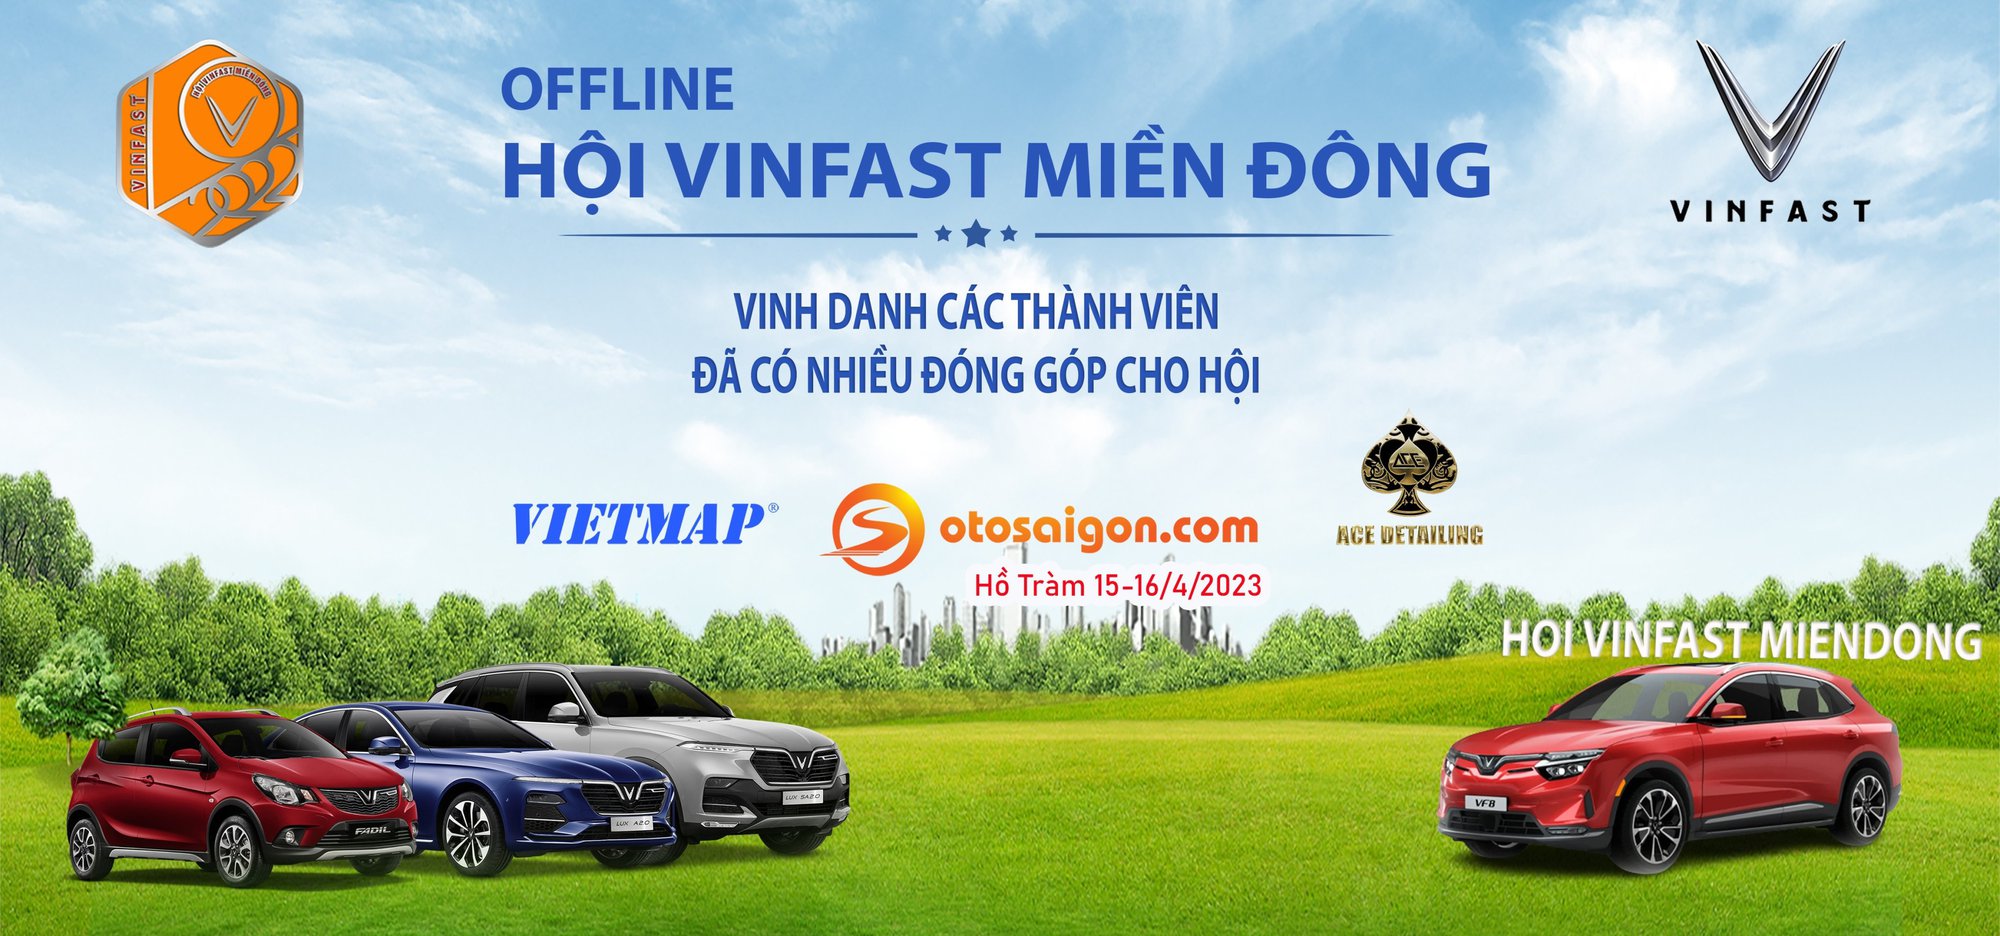 Hội VinFast Miền Đông tổ chức offline vinh danh thành viên có đóng góp tích cực - Ảnh 1.